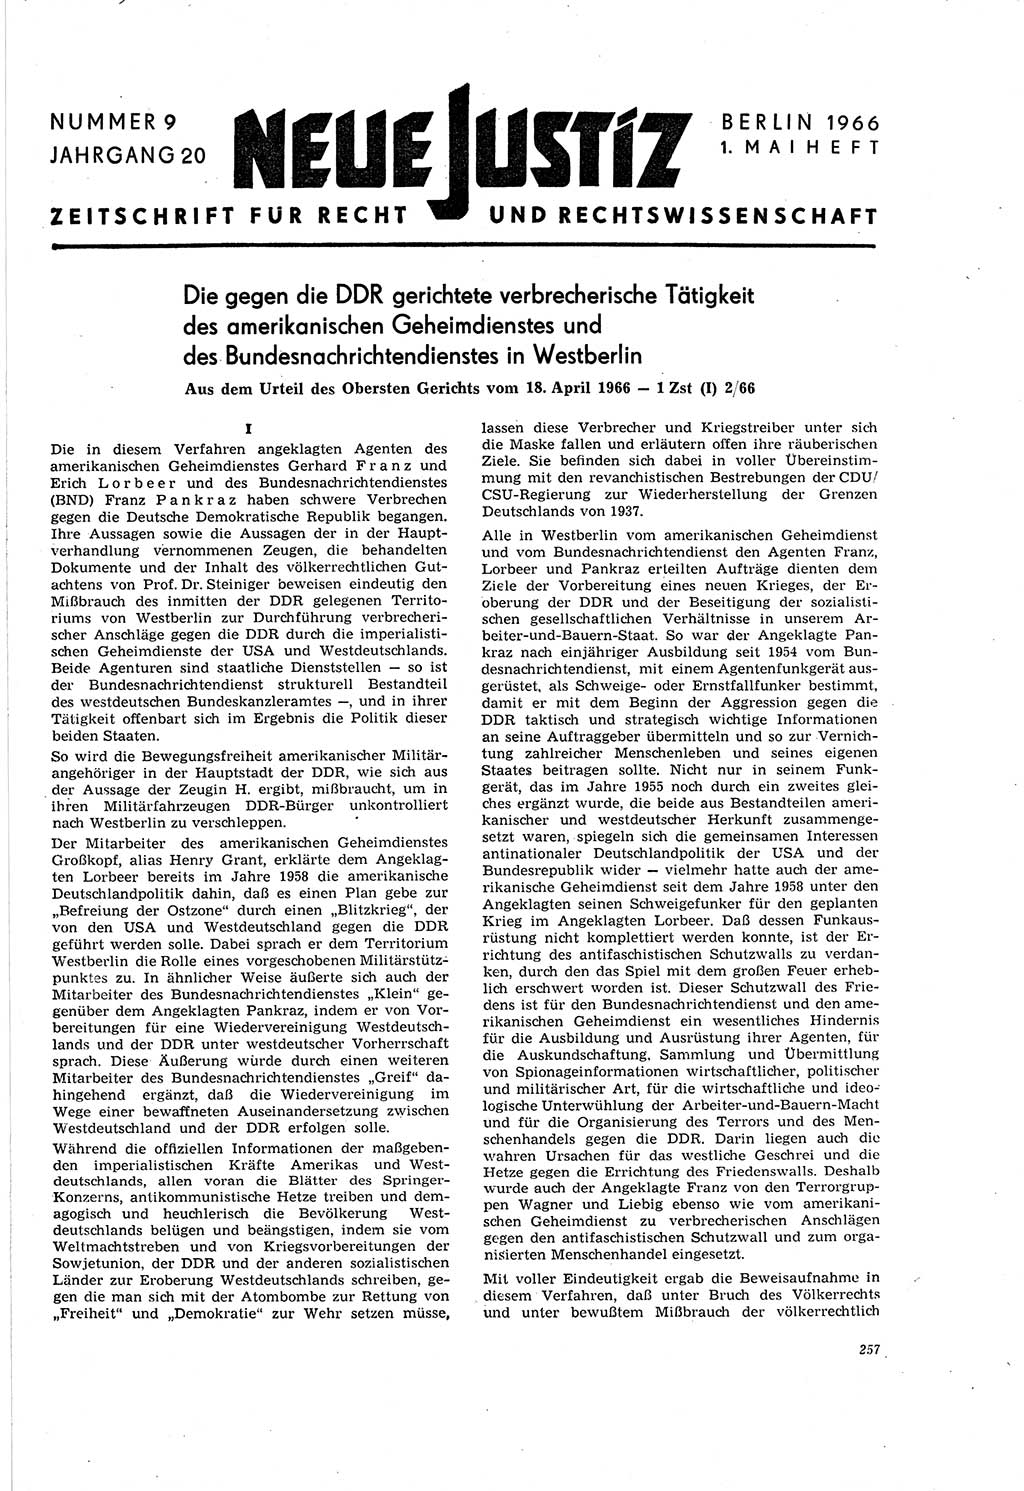 Neue Justiz (NJ), Zeitschrift für Recht und Rechtswissenschaft [Deutsche Demokratische Republik (DDR)], 20. Jahrgang 1966, Seite 257 (NJ DDR 1966, S. 257)